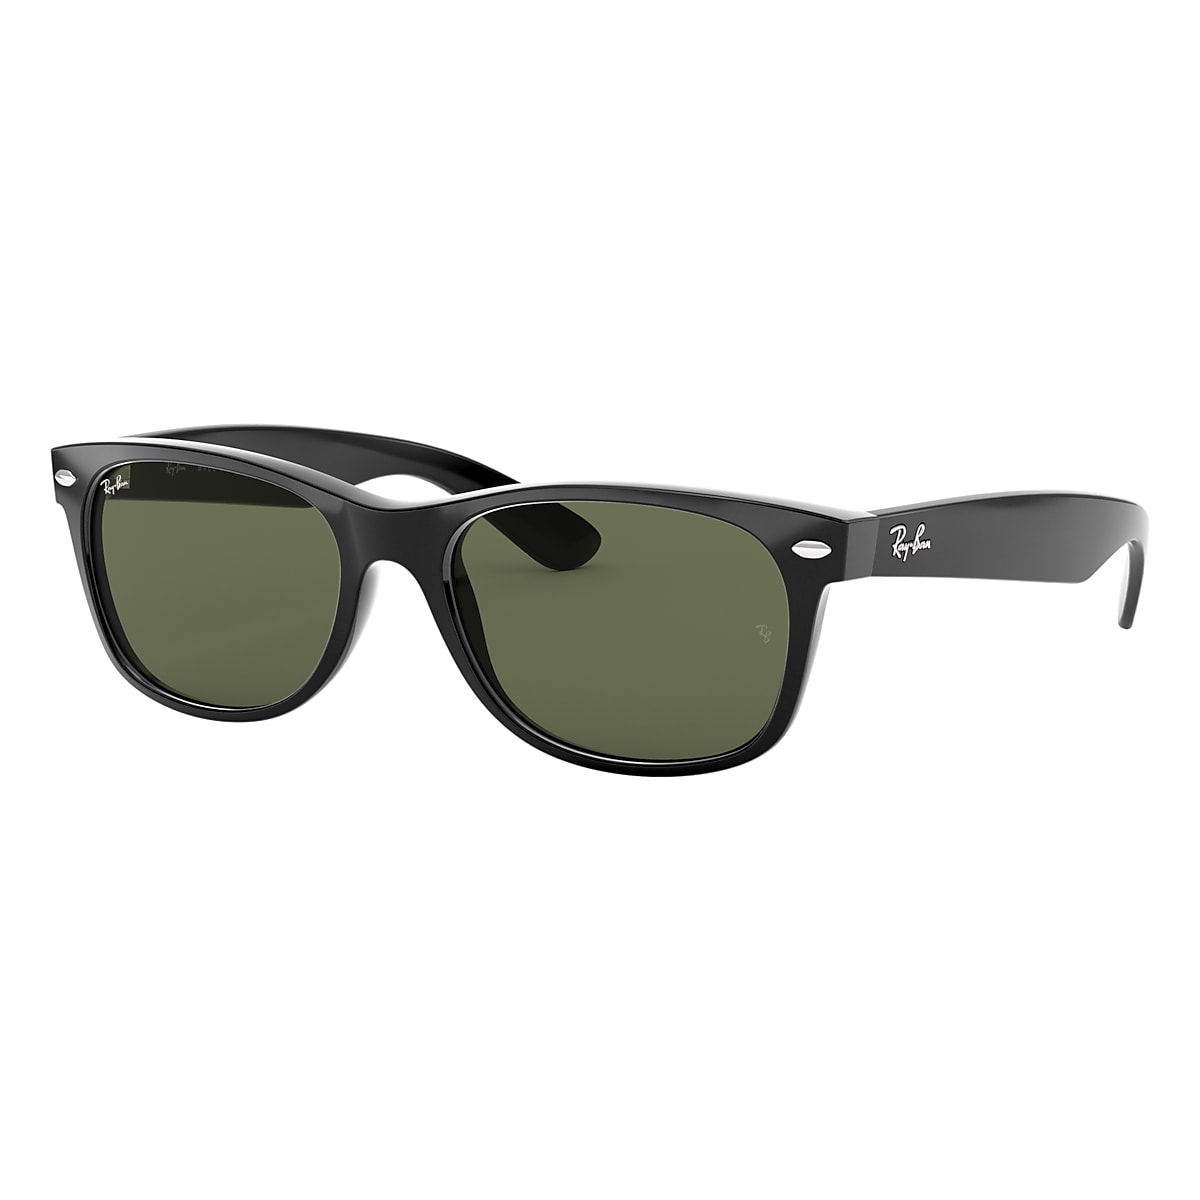 Samengesteld Toeschouwer Geldschieter Ray-Ban Black Sunglasses | Glasses.com® | Free Shipping